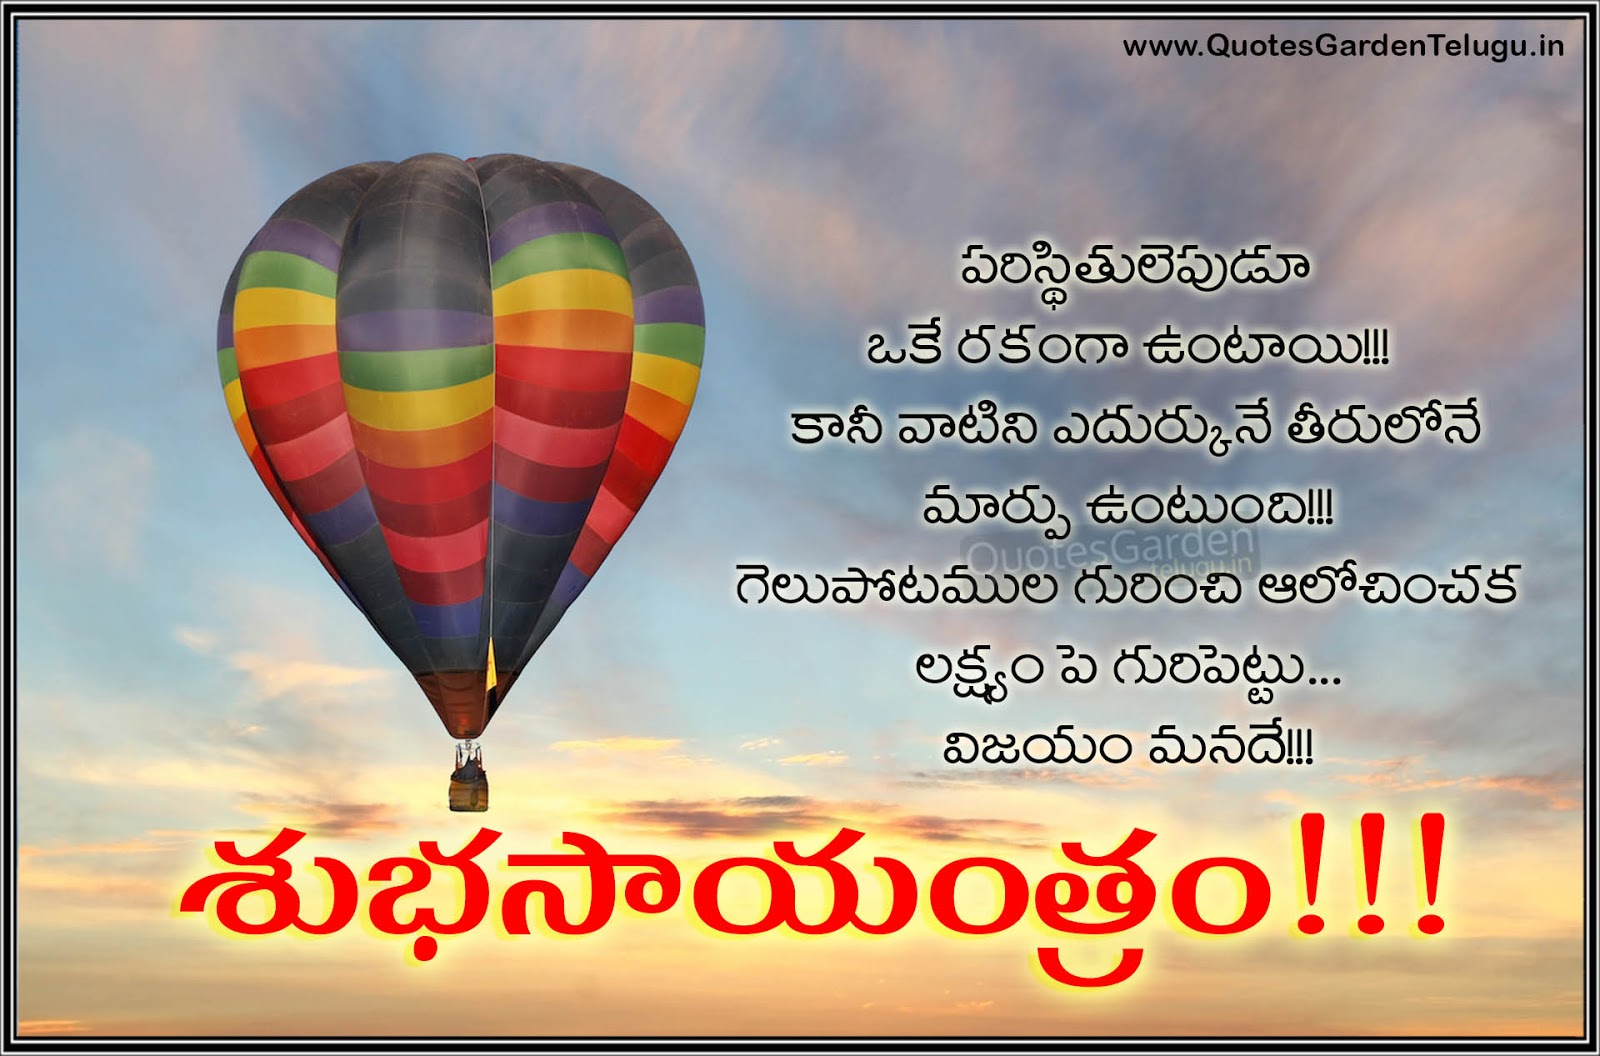 Best Telugu Good evening Quotes 1711 | QUOTES GARDEN TELUGU ...